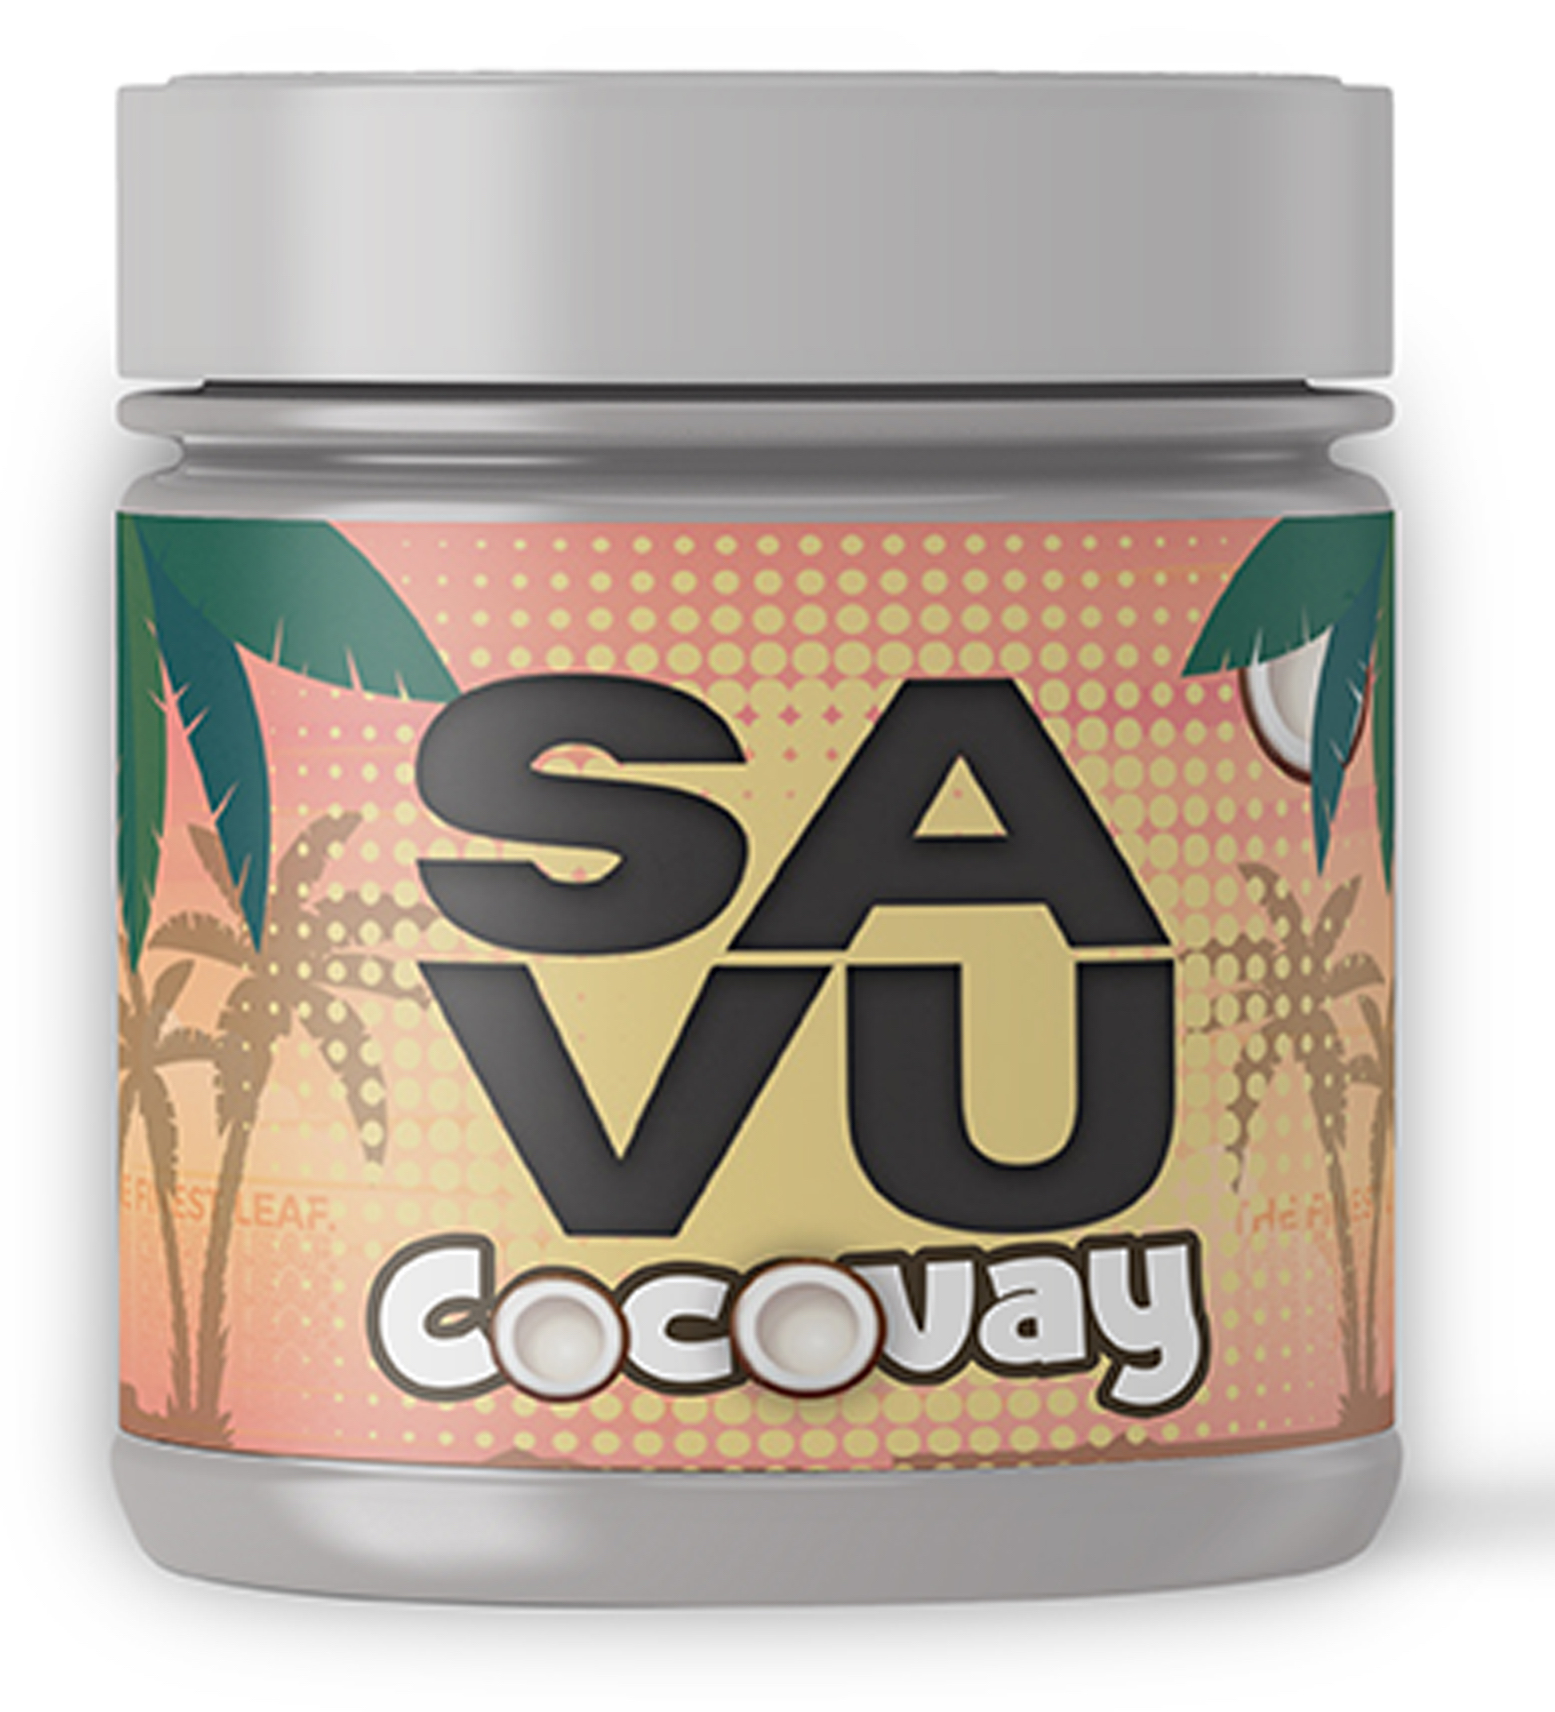 Savu Tabak Cocovay 25g